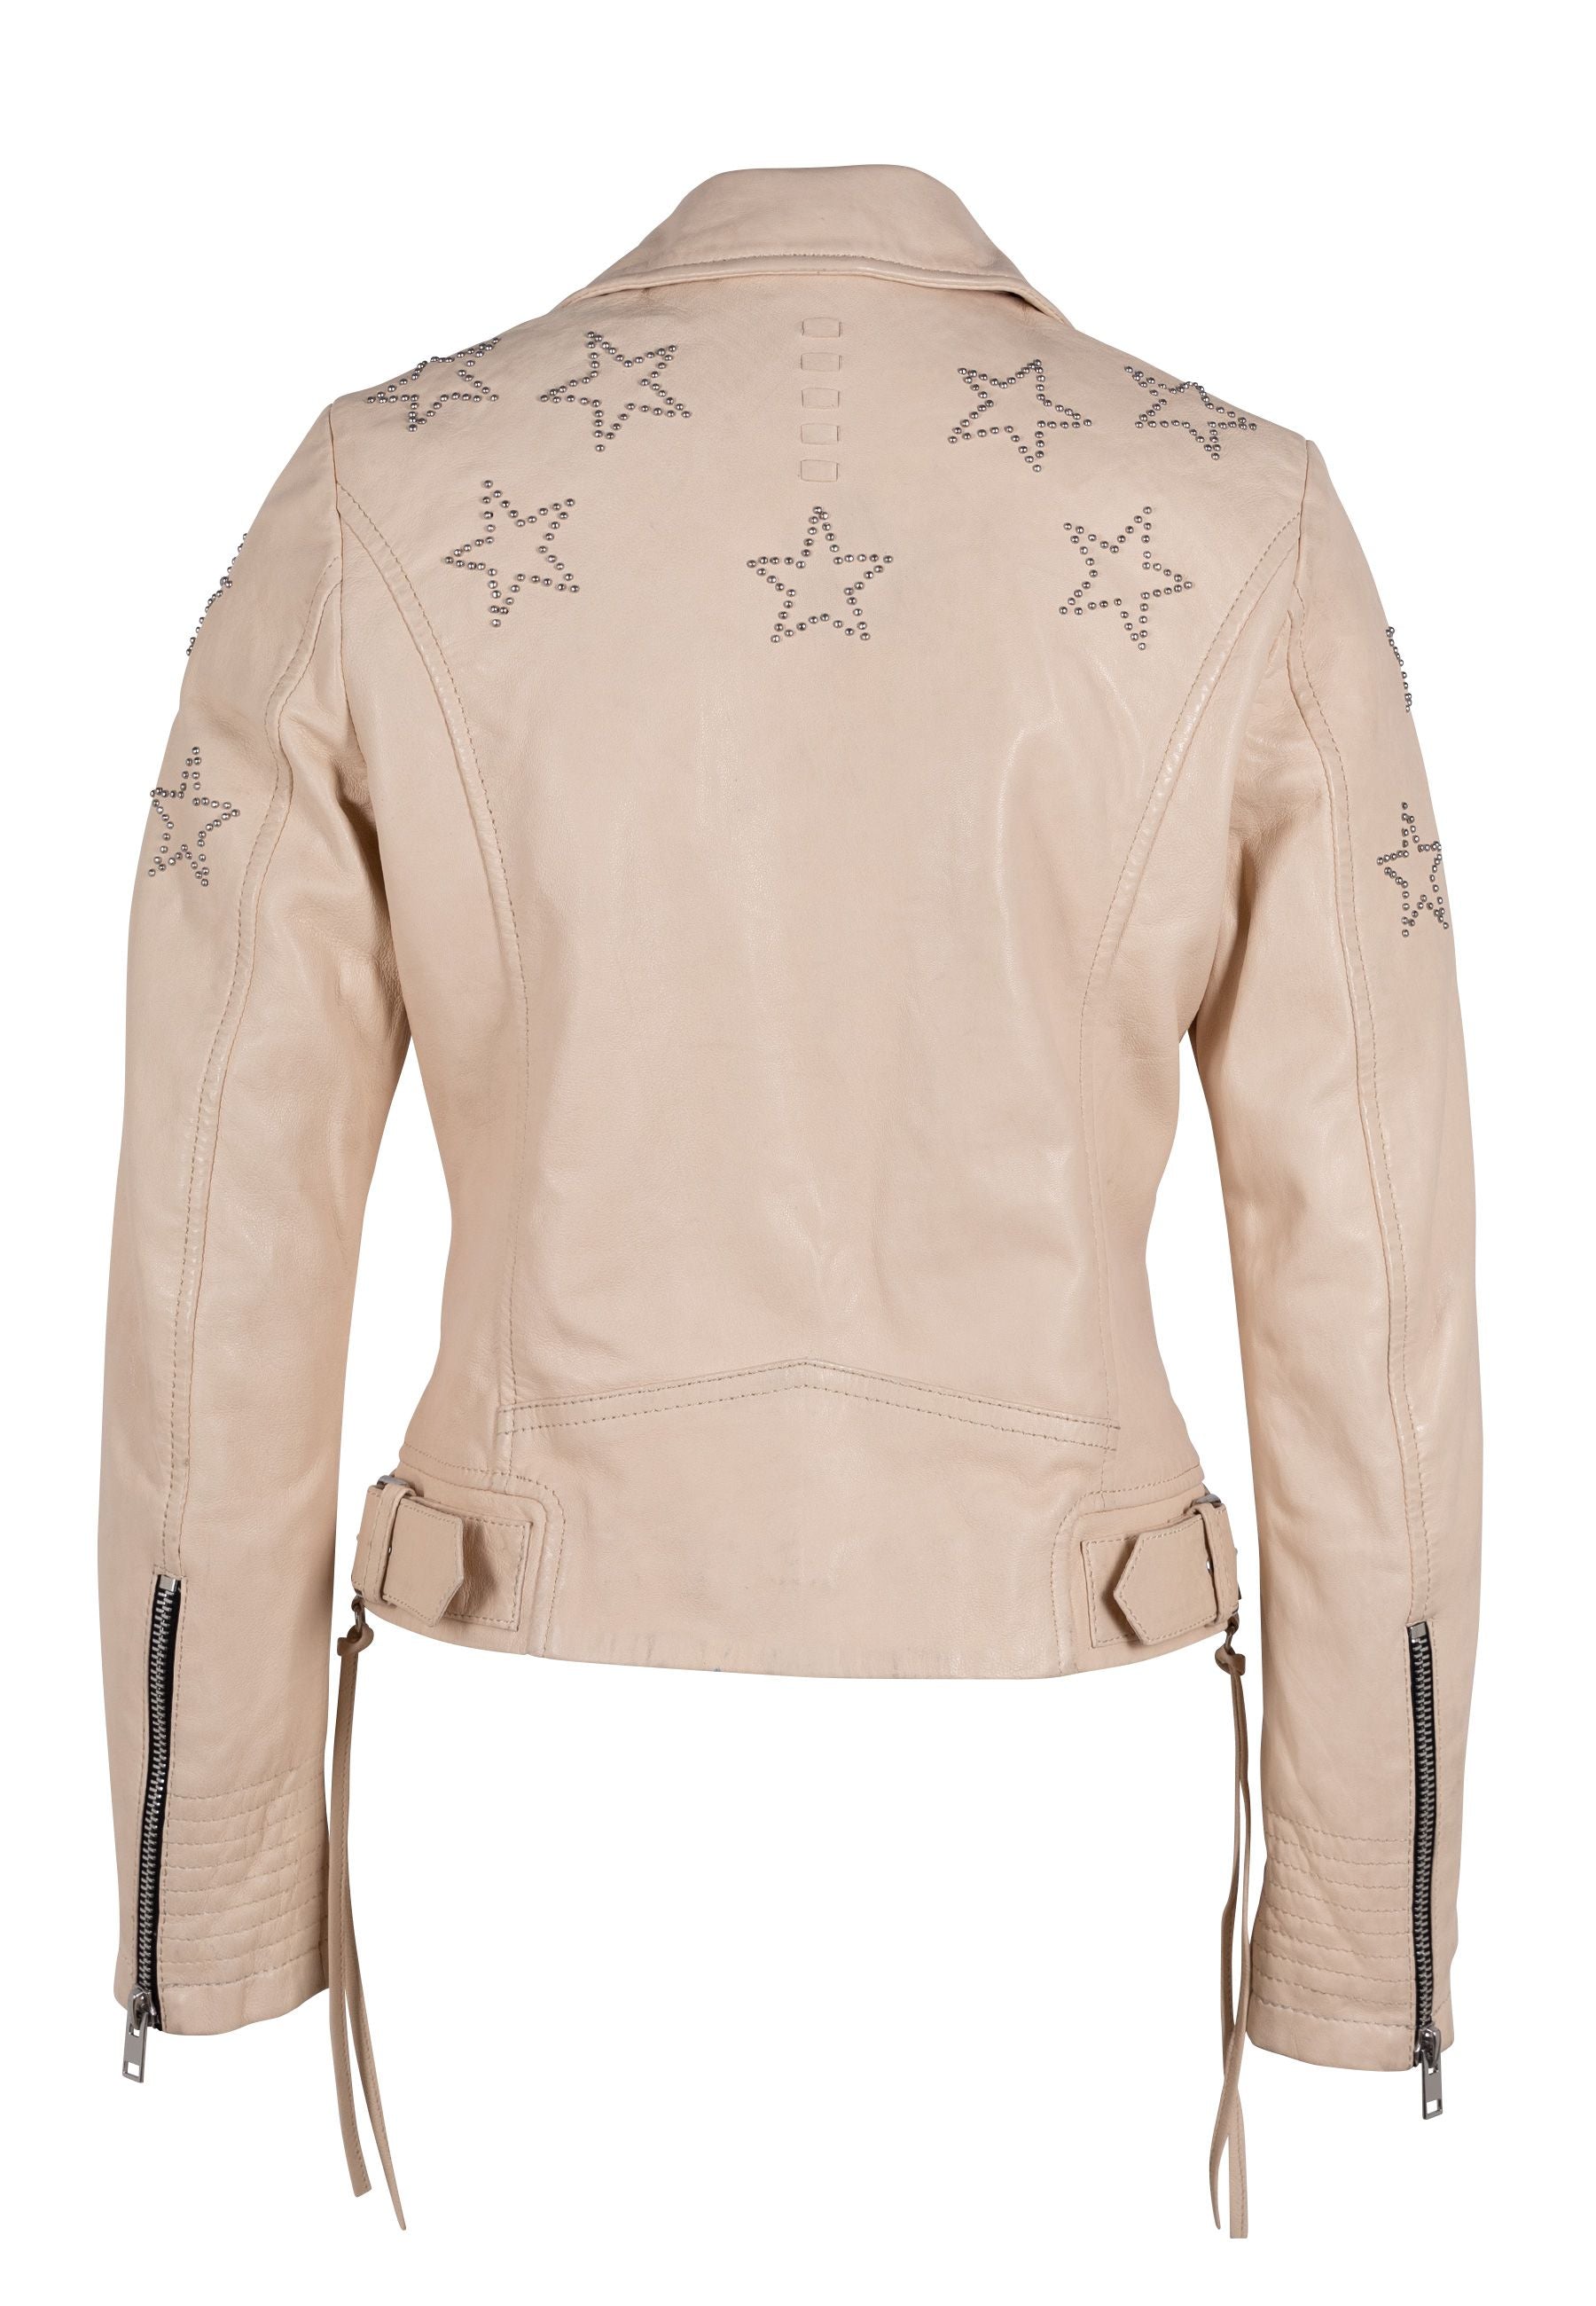 Wana Leather Jacket, Fit mauritiusleather – Slim White